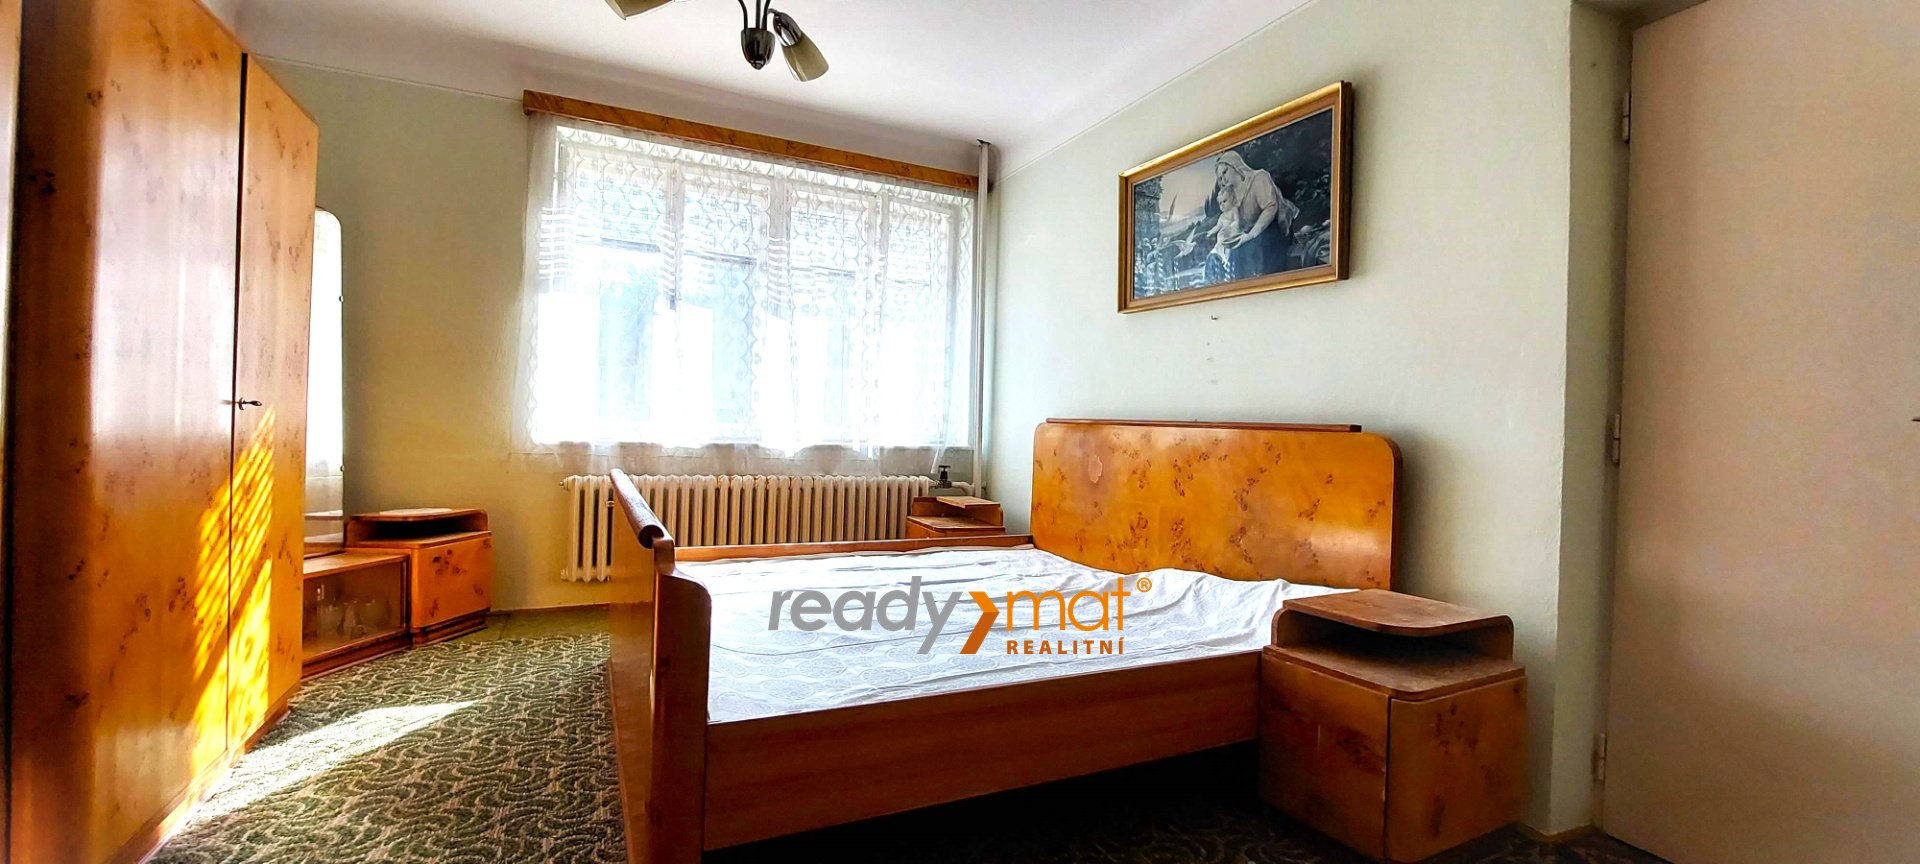 Prodej, Rodinné domy, 125 m² – Hlohovec - ready-mat realitní